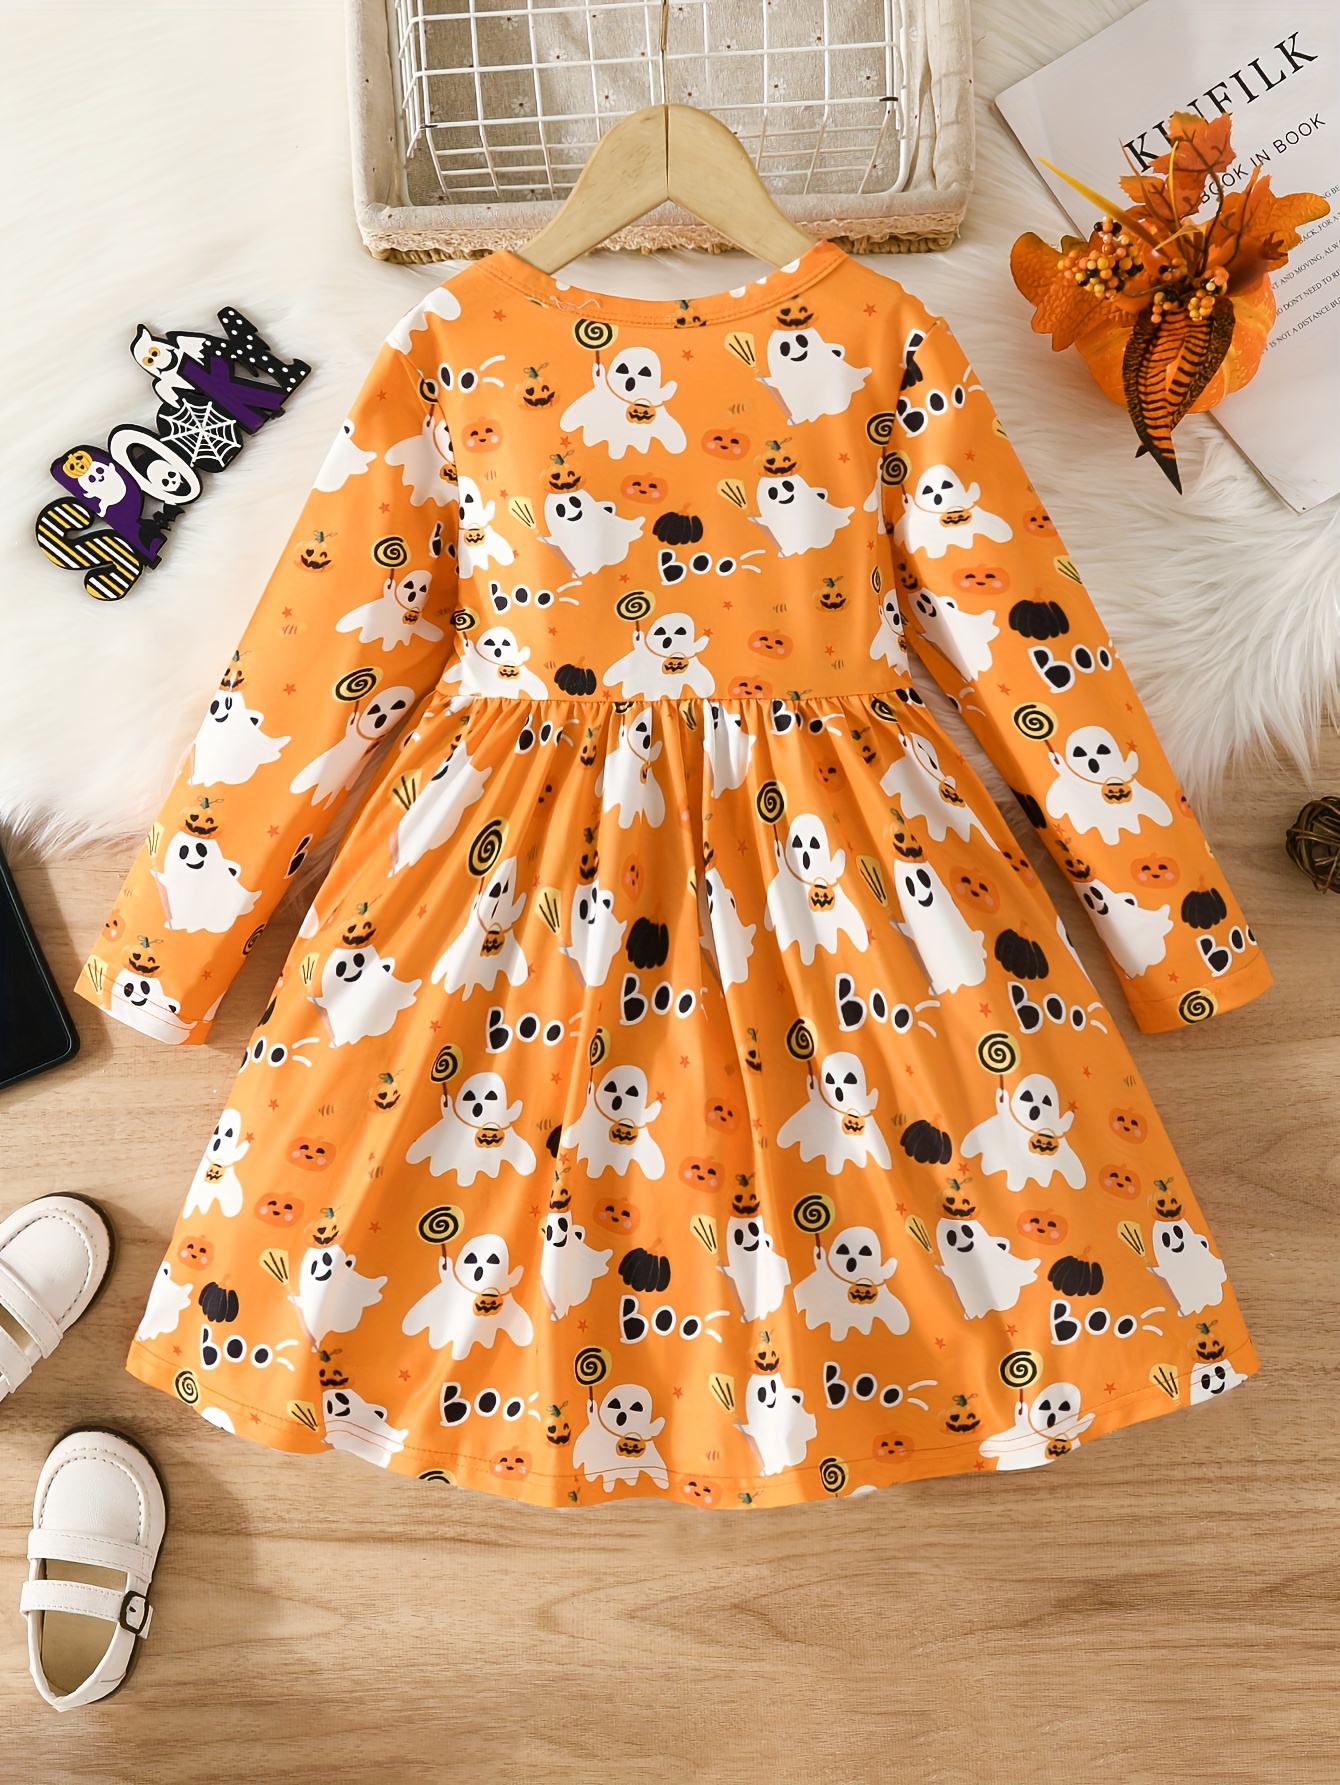 wybzd Halloween Baby Girl Princess Dress Pumpkin Print Patchwork